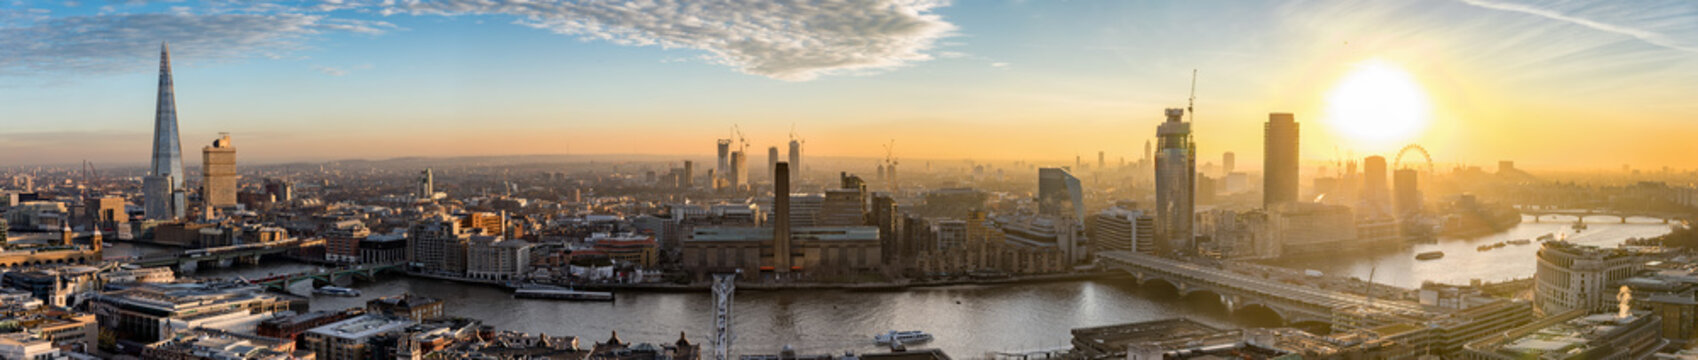 Sonnenuntergang über der neuen Skyline von London, Großbritannien